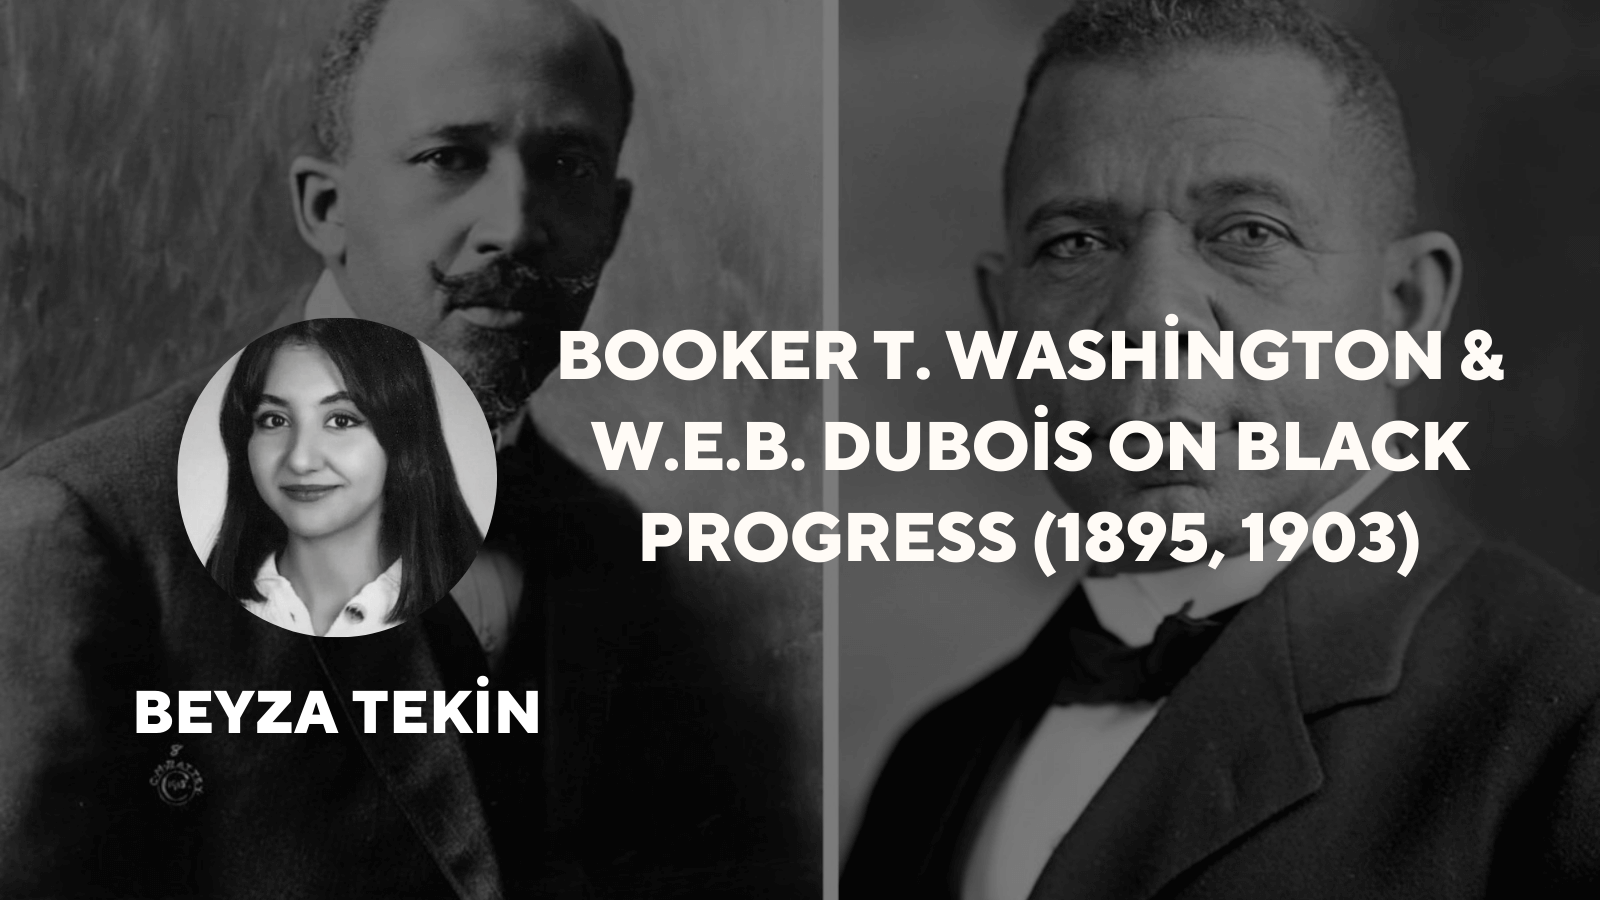 Booker T. Washington & W.E.B. DuBois on Black Progress (1895, 1903)